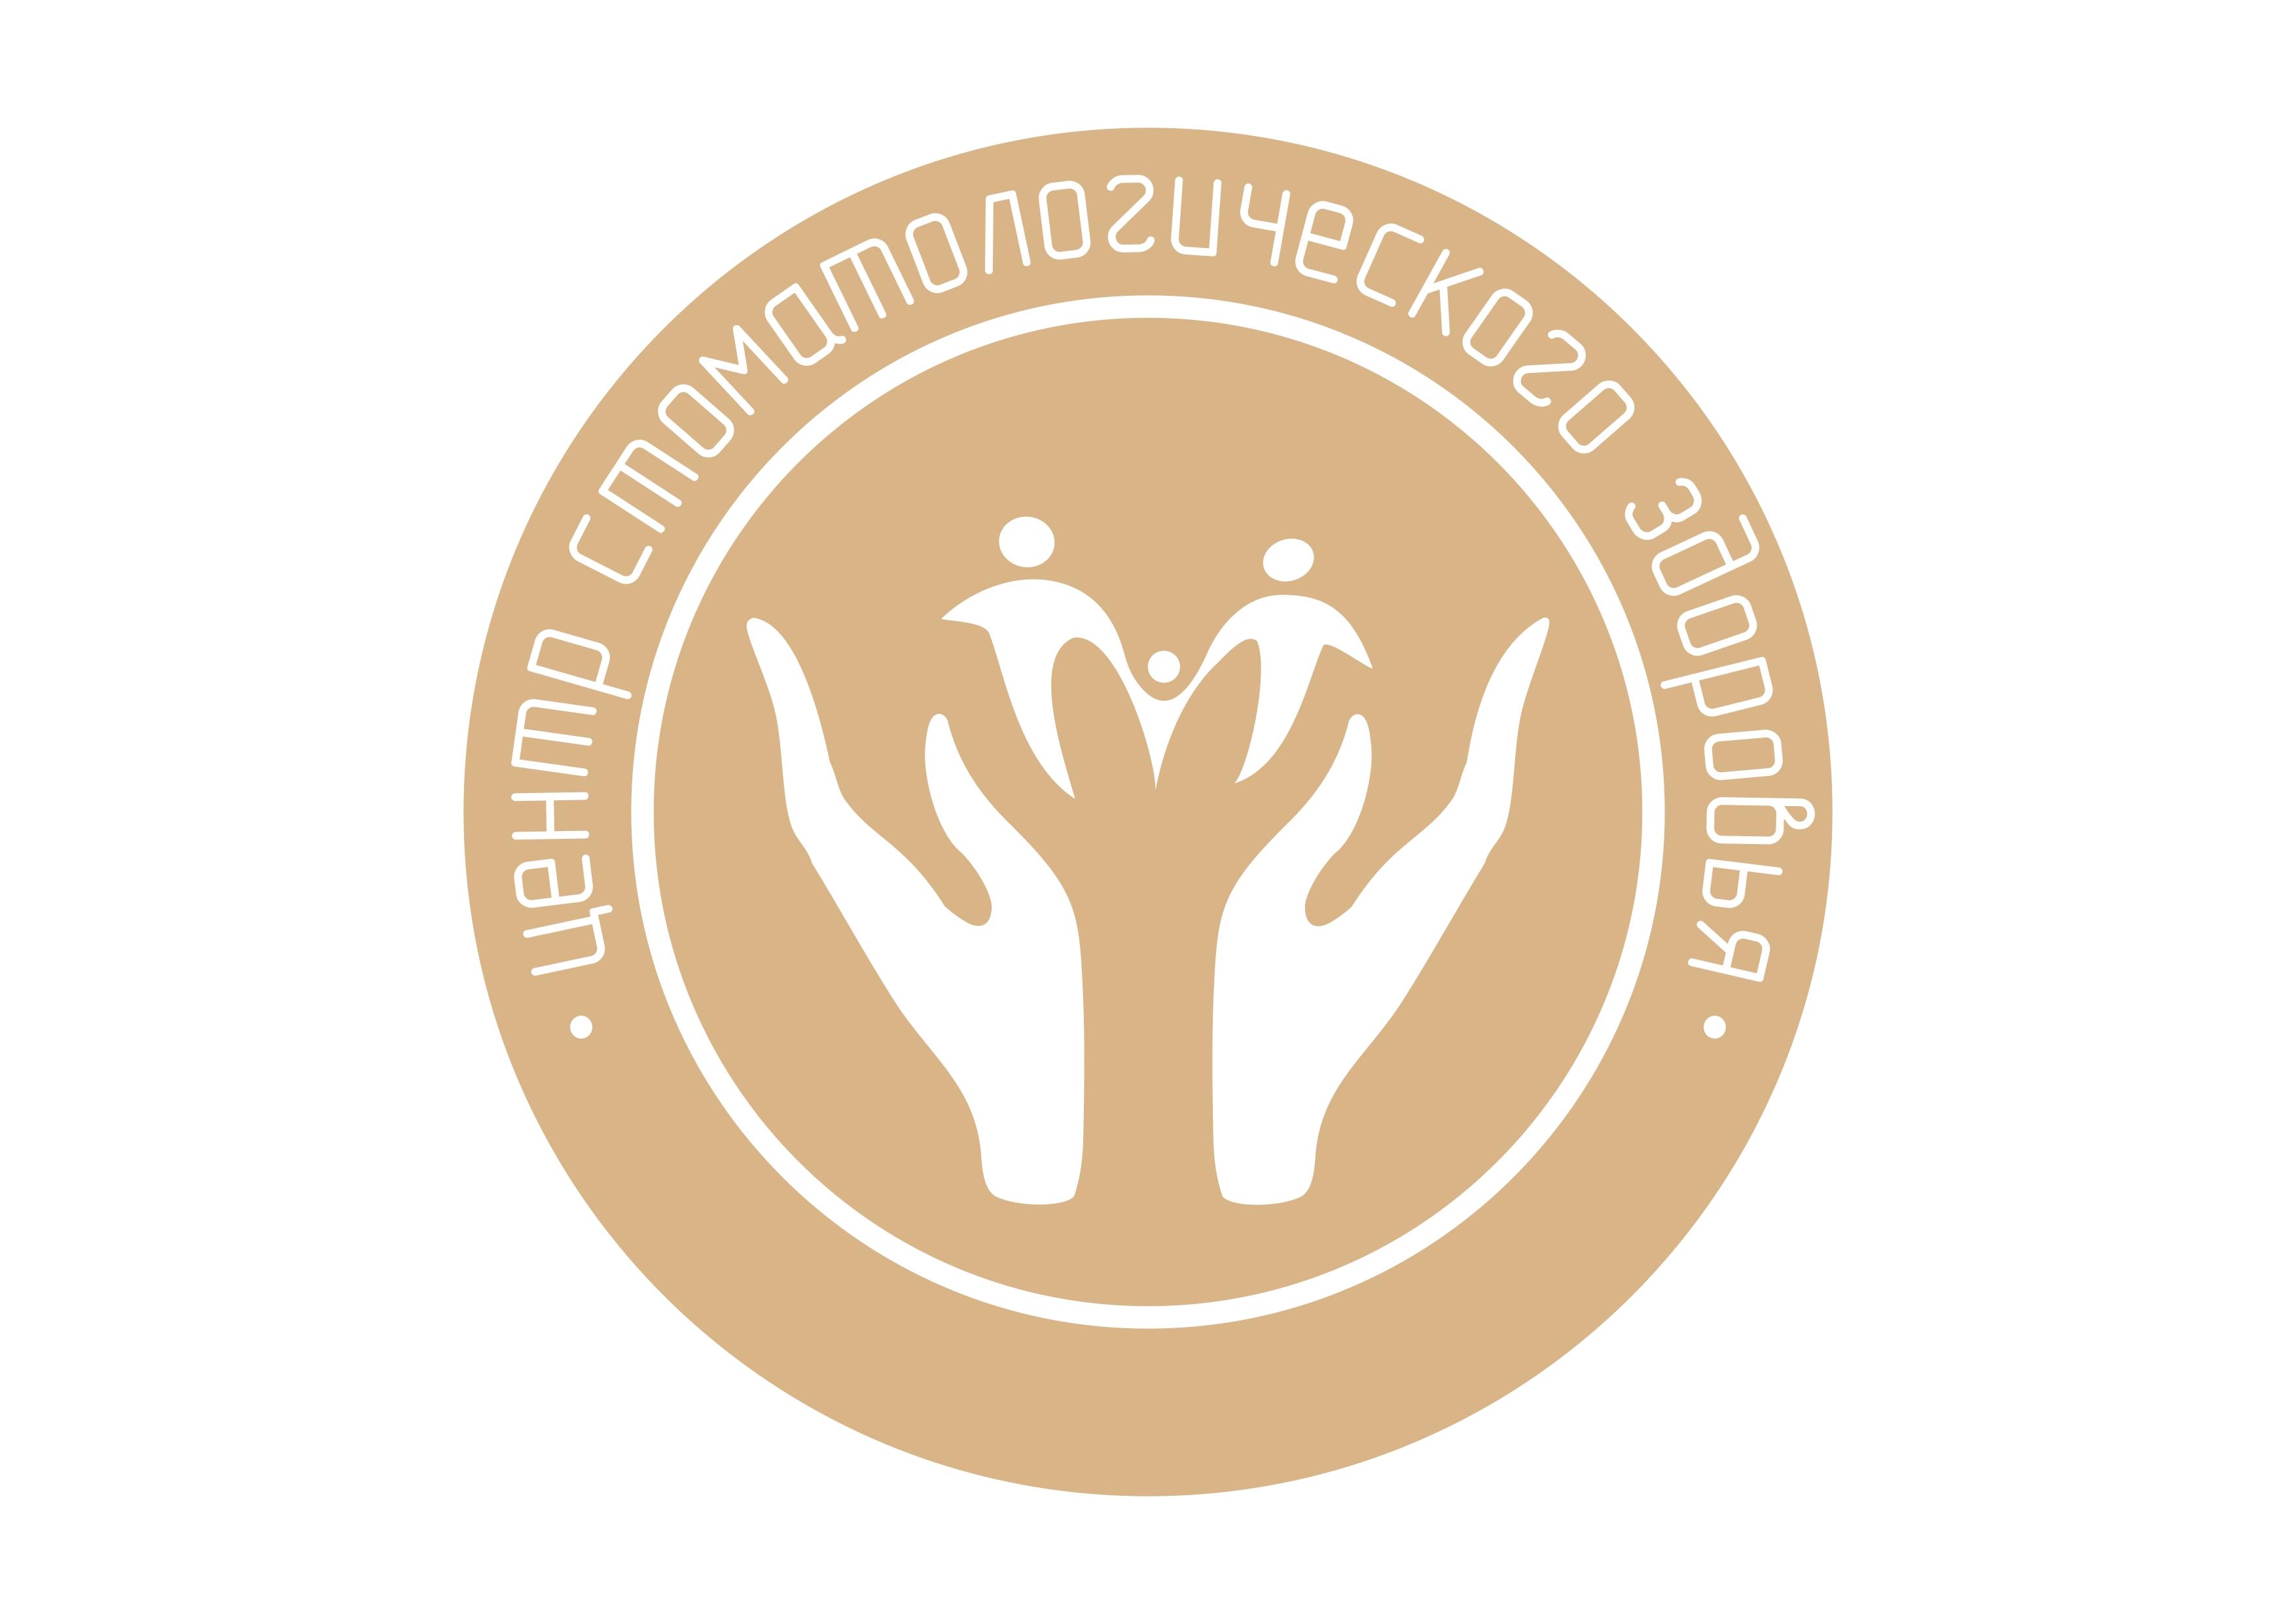 Центр стоматологического здоровья. Центр стоматологического здоровья Барнаул. Здоровье Барнаул лого. Логотип стоматологической клиники.